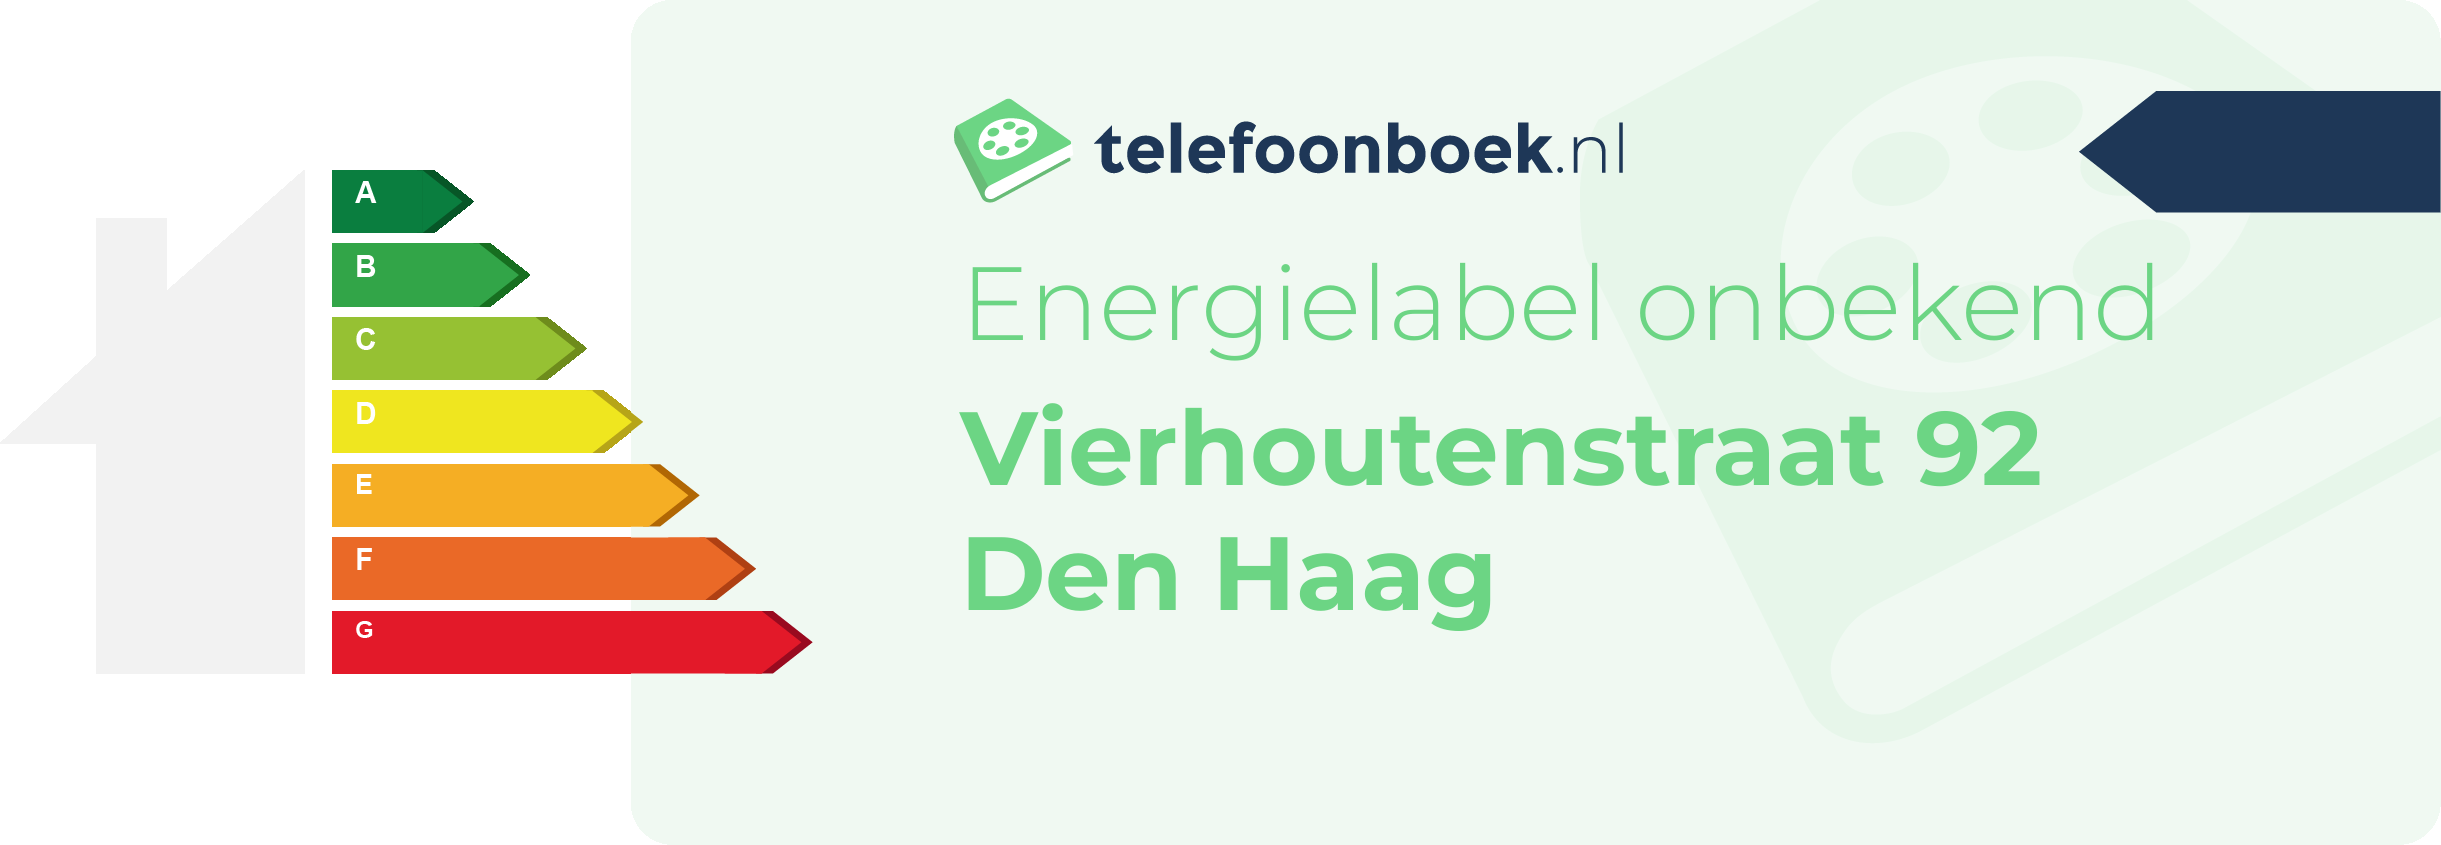 Energielabel Vierhoutenstraat 92 Den Haag